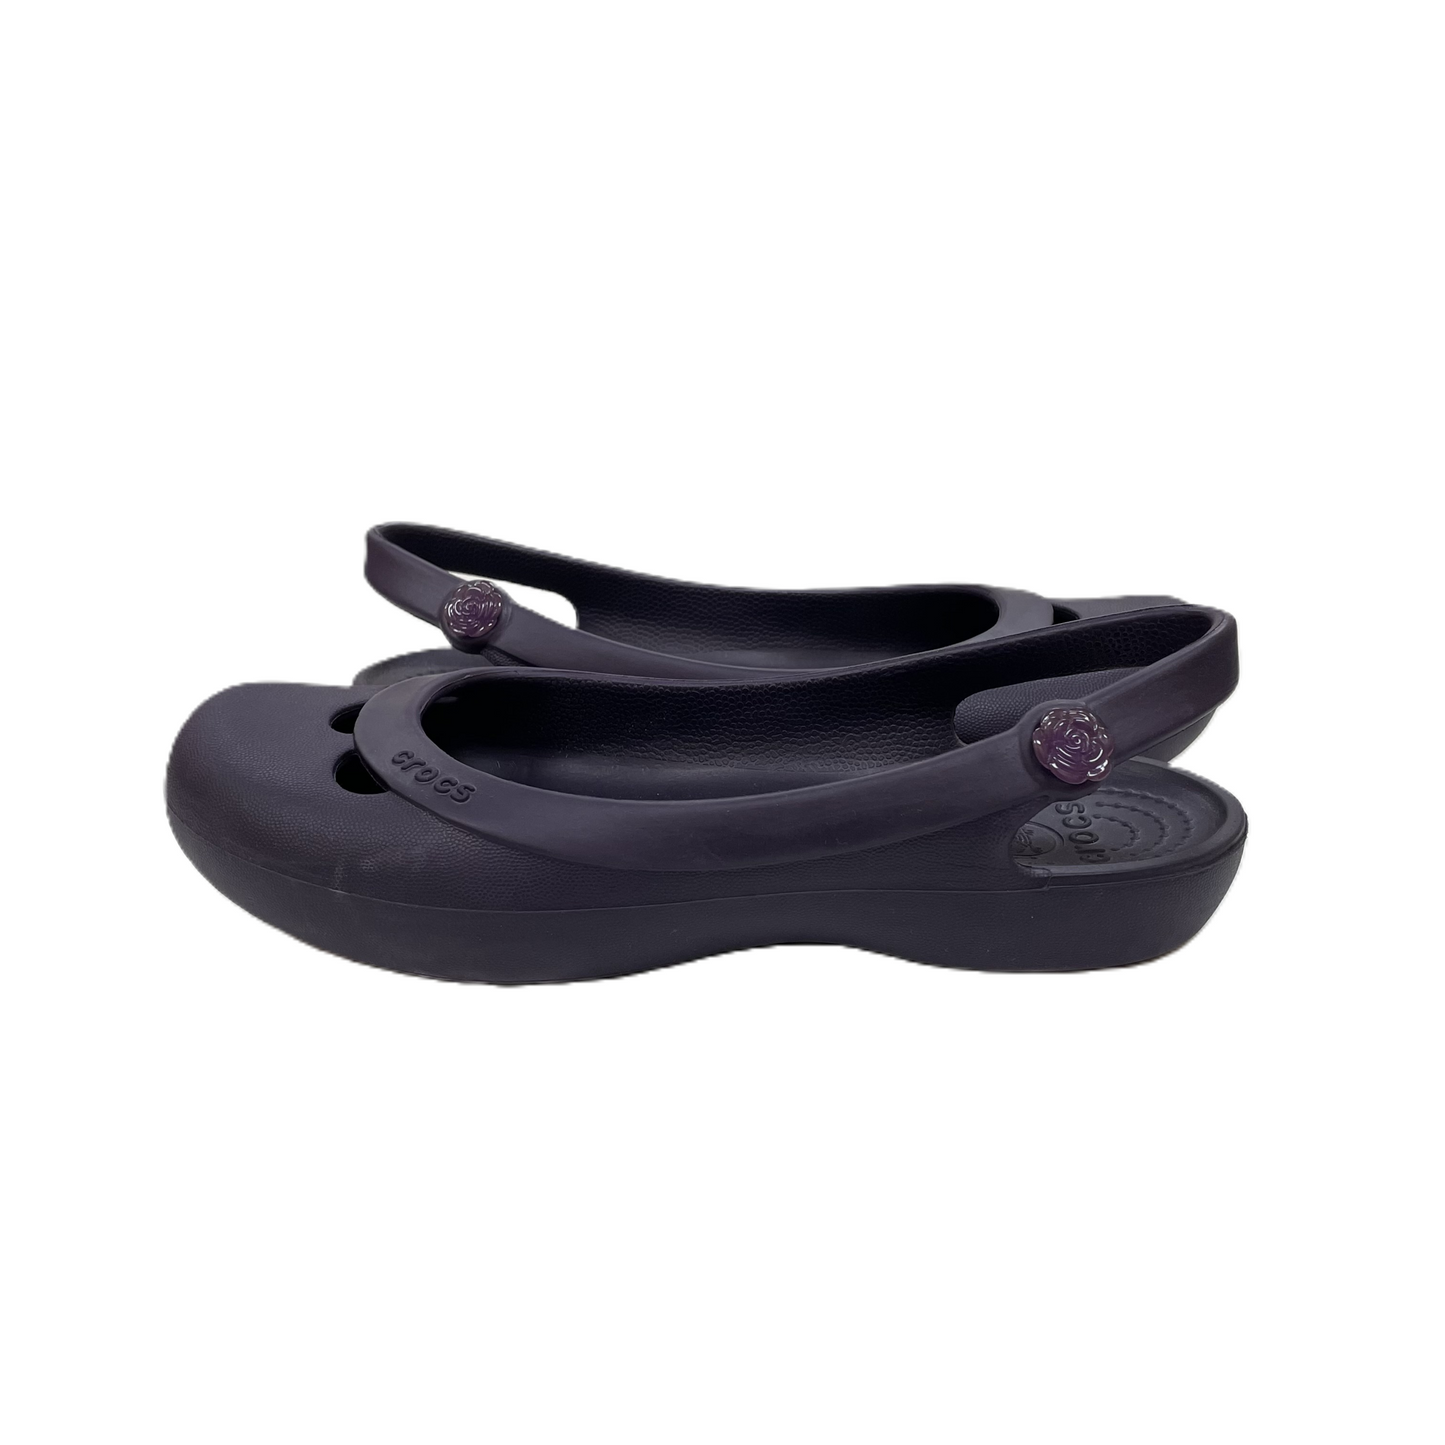 Purple Shoes Flats By Crocs, Size: 8